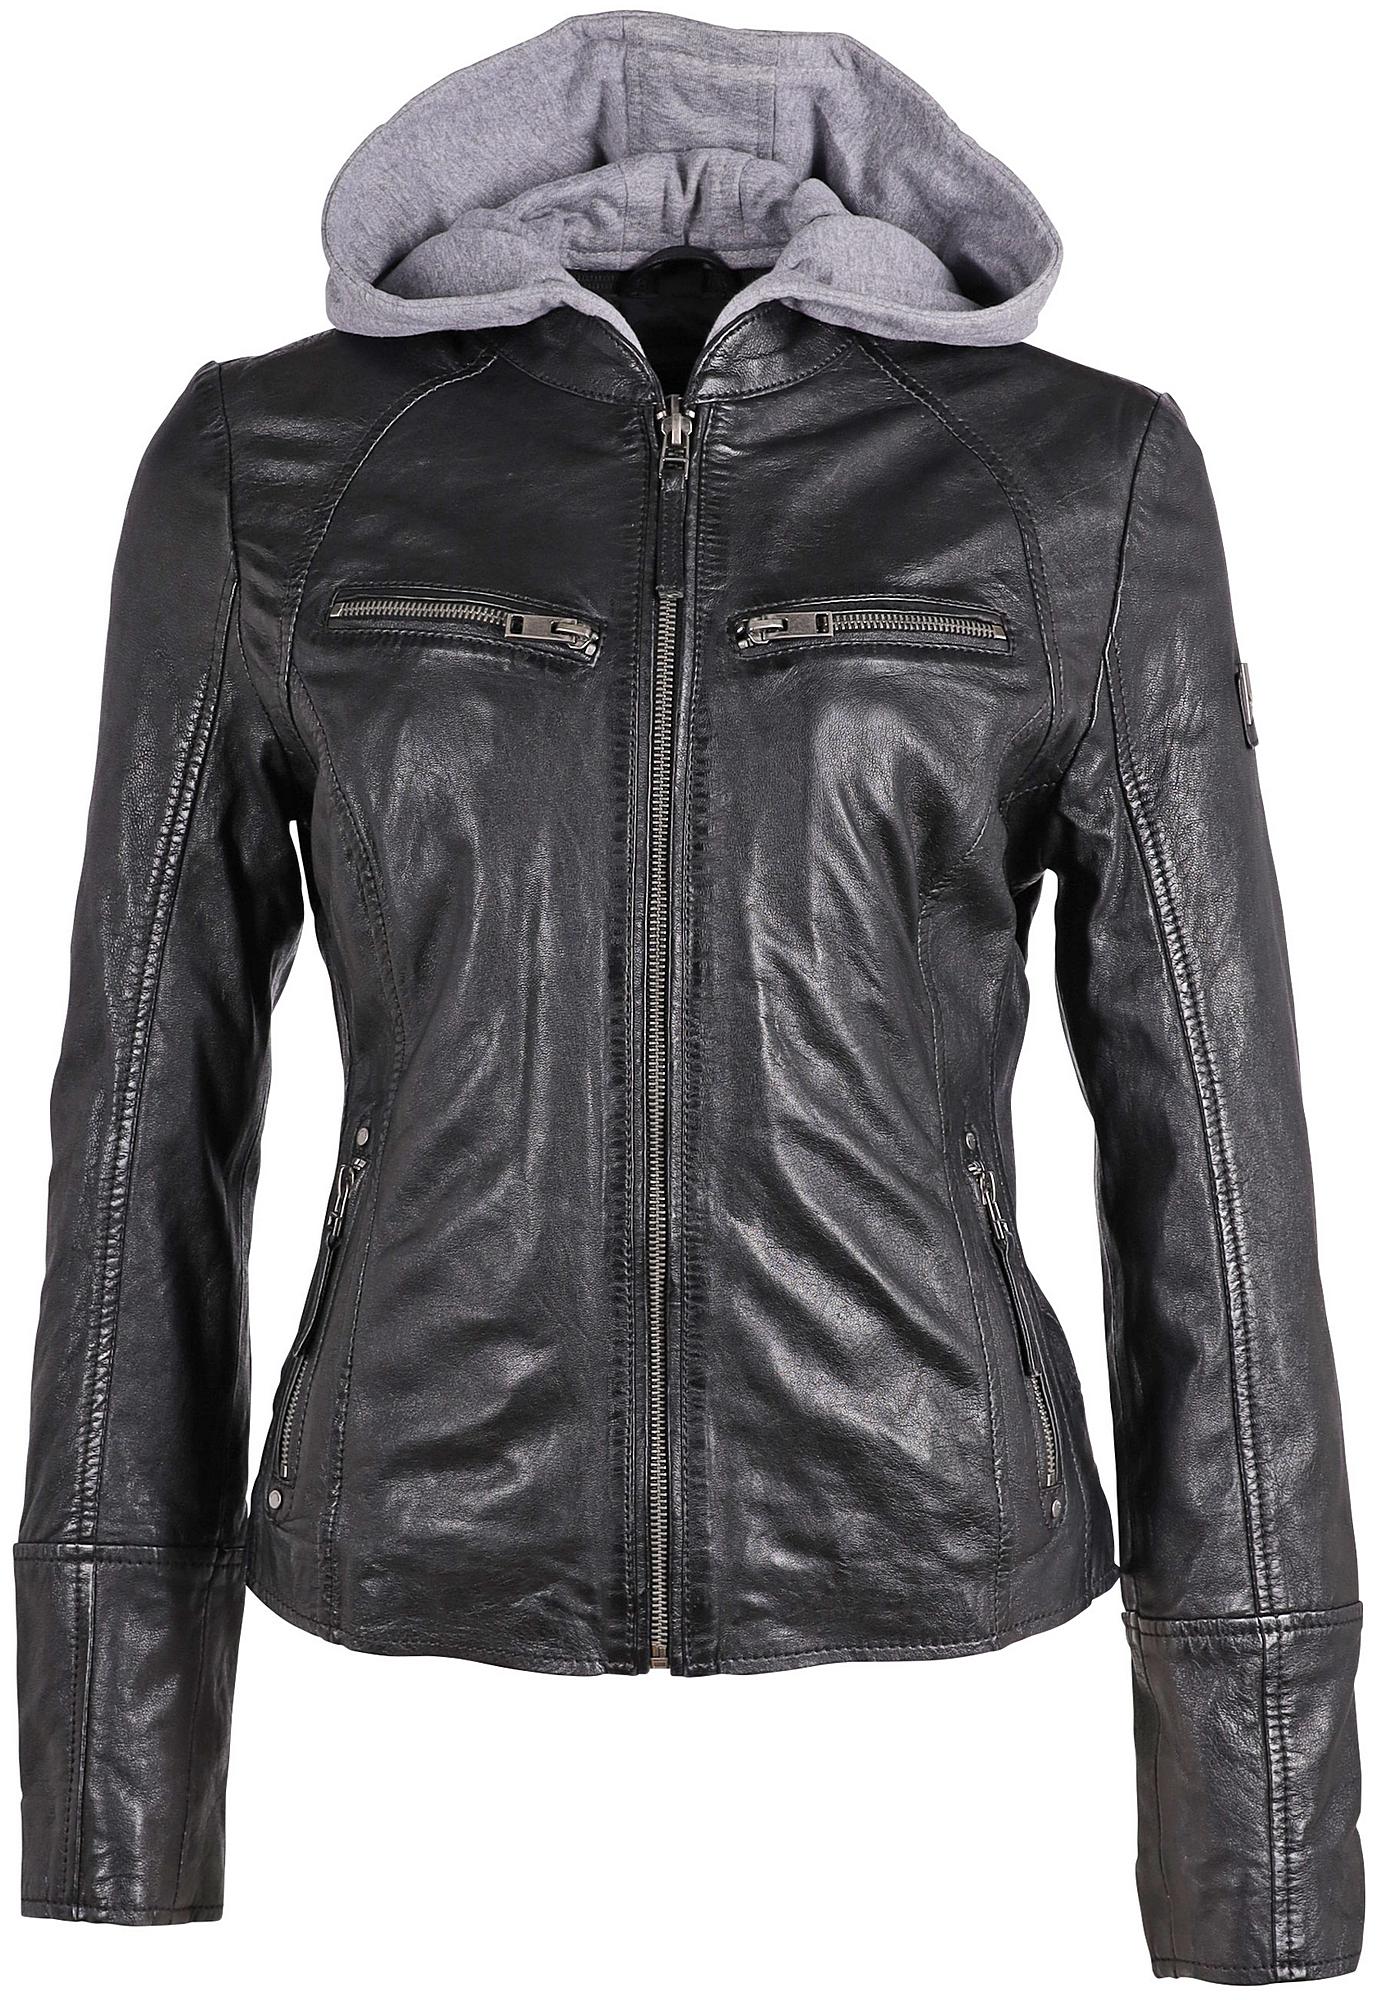 mauritiusleather Nola Black – Leather Jacket, RF